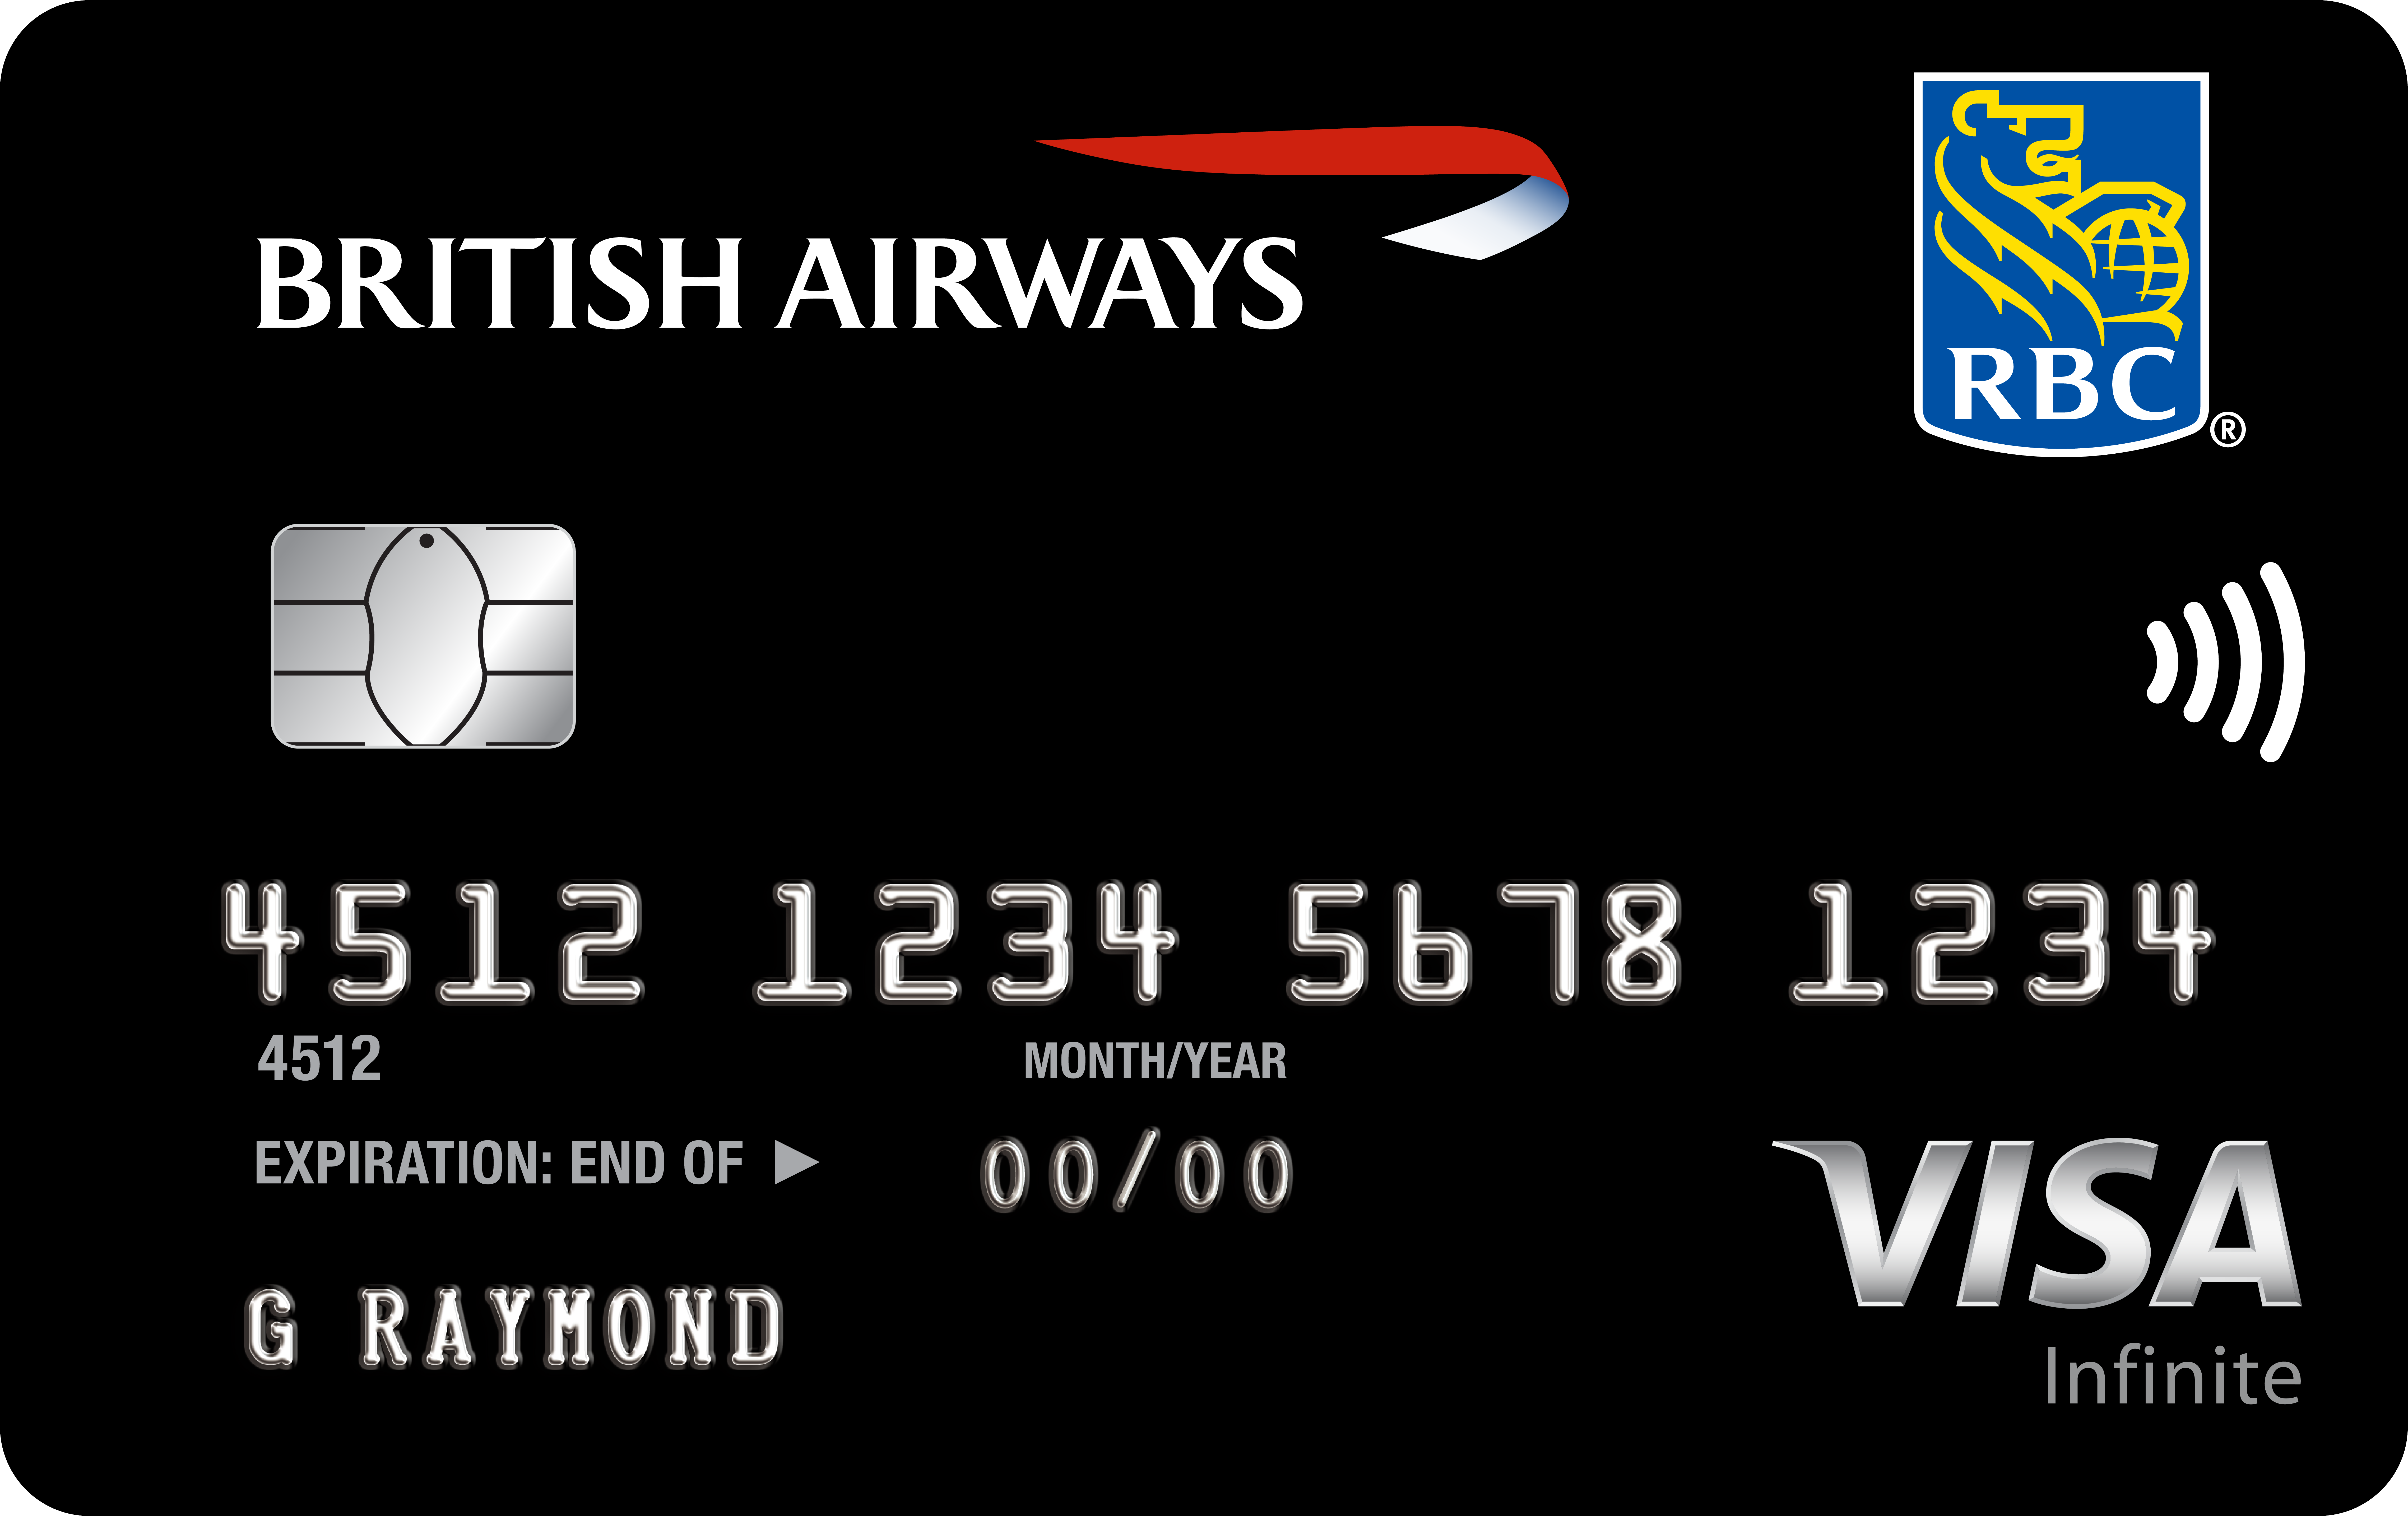 RBC British Airawys Visa Infinite Card